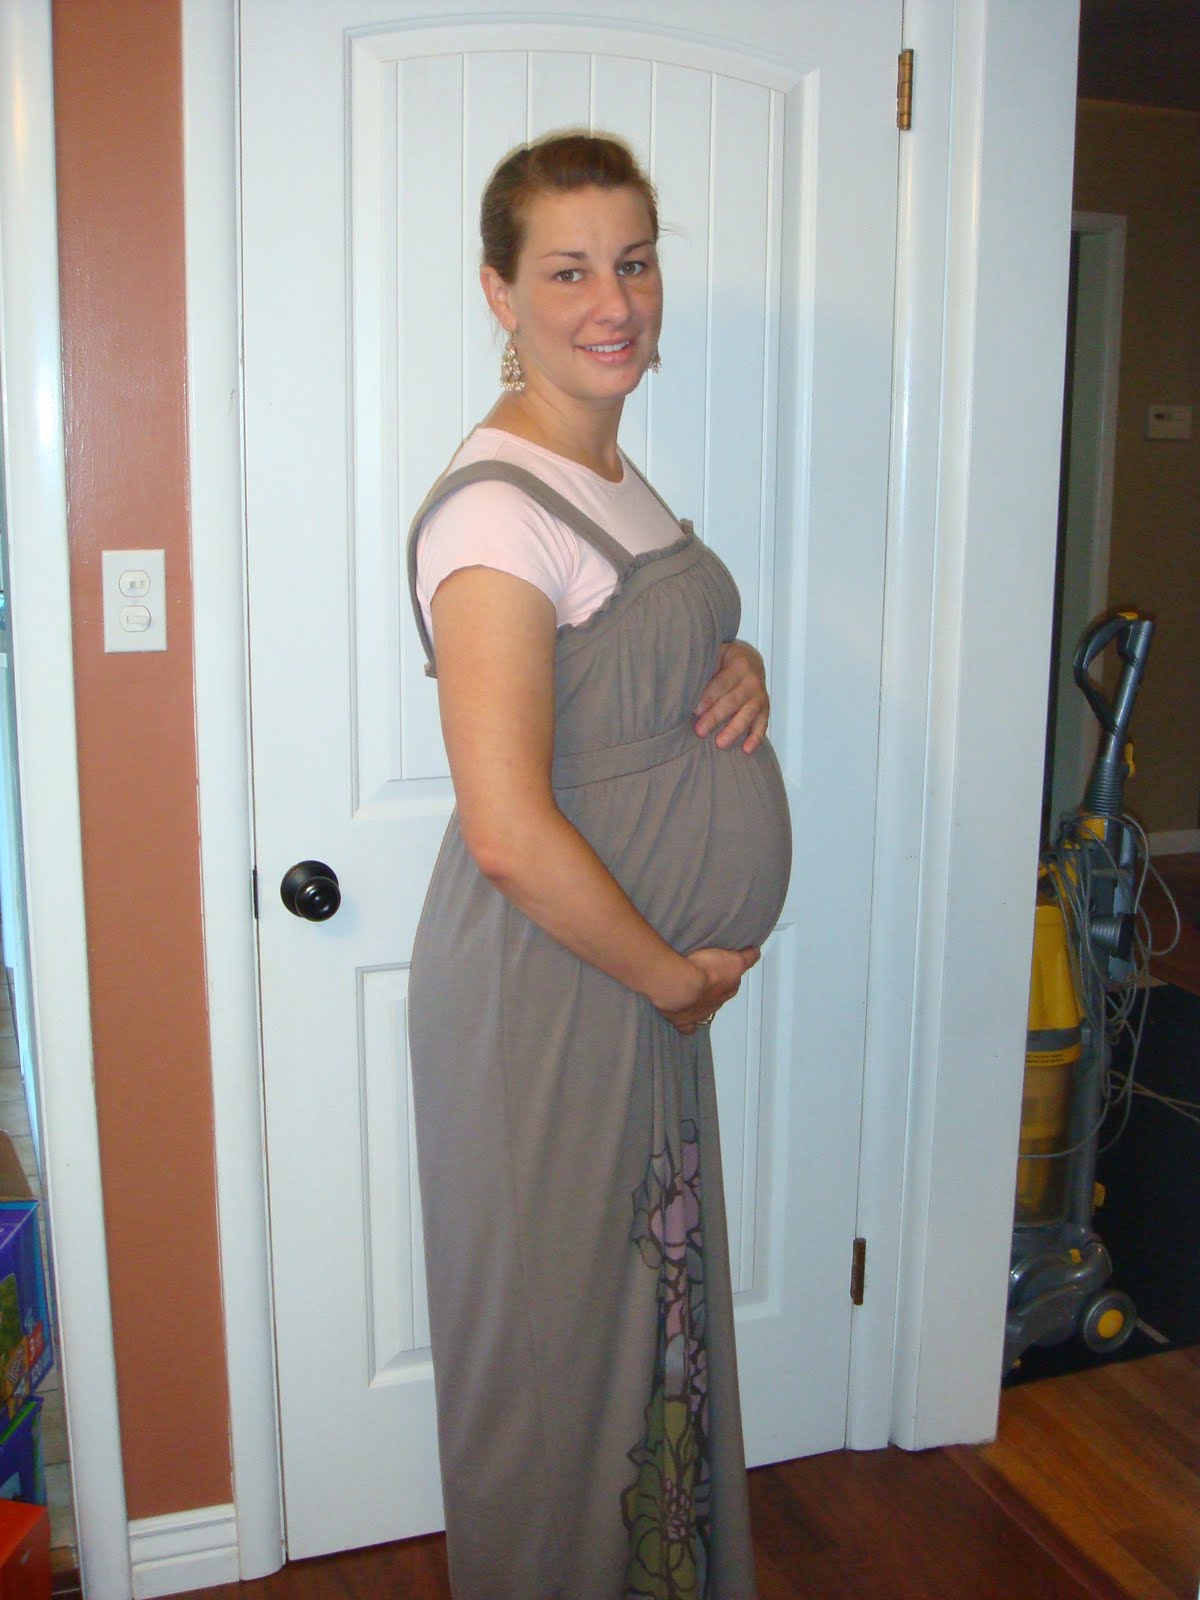 http://3.bp.blogspot.com/_8n6v9w--Jgc/TJquj4e_yDI/AAAAAAAAFSU/iUTummkAT3w/s1600/pregnancy+week+38+003.jpg